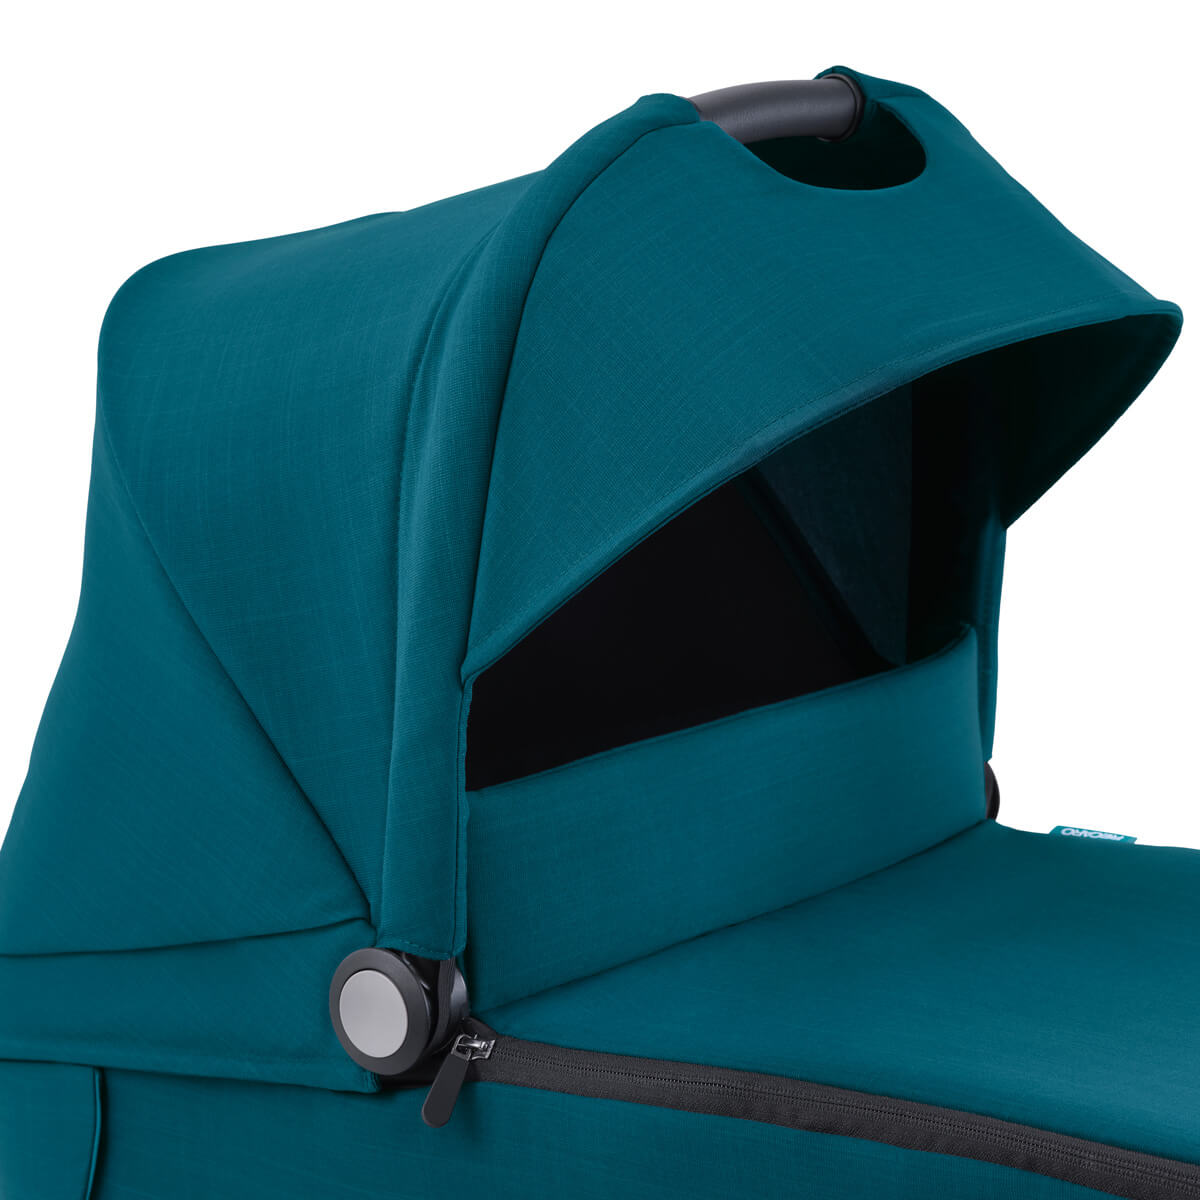 Dječja kolica 4u1 RECARO Sadena + sjedalica Avan + Isofix [Teal Green] 7